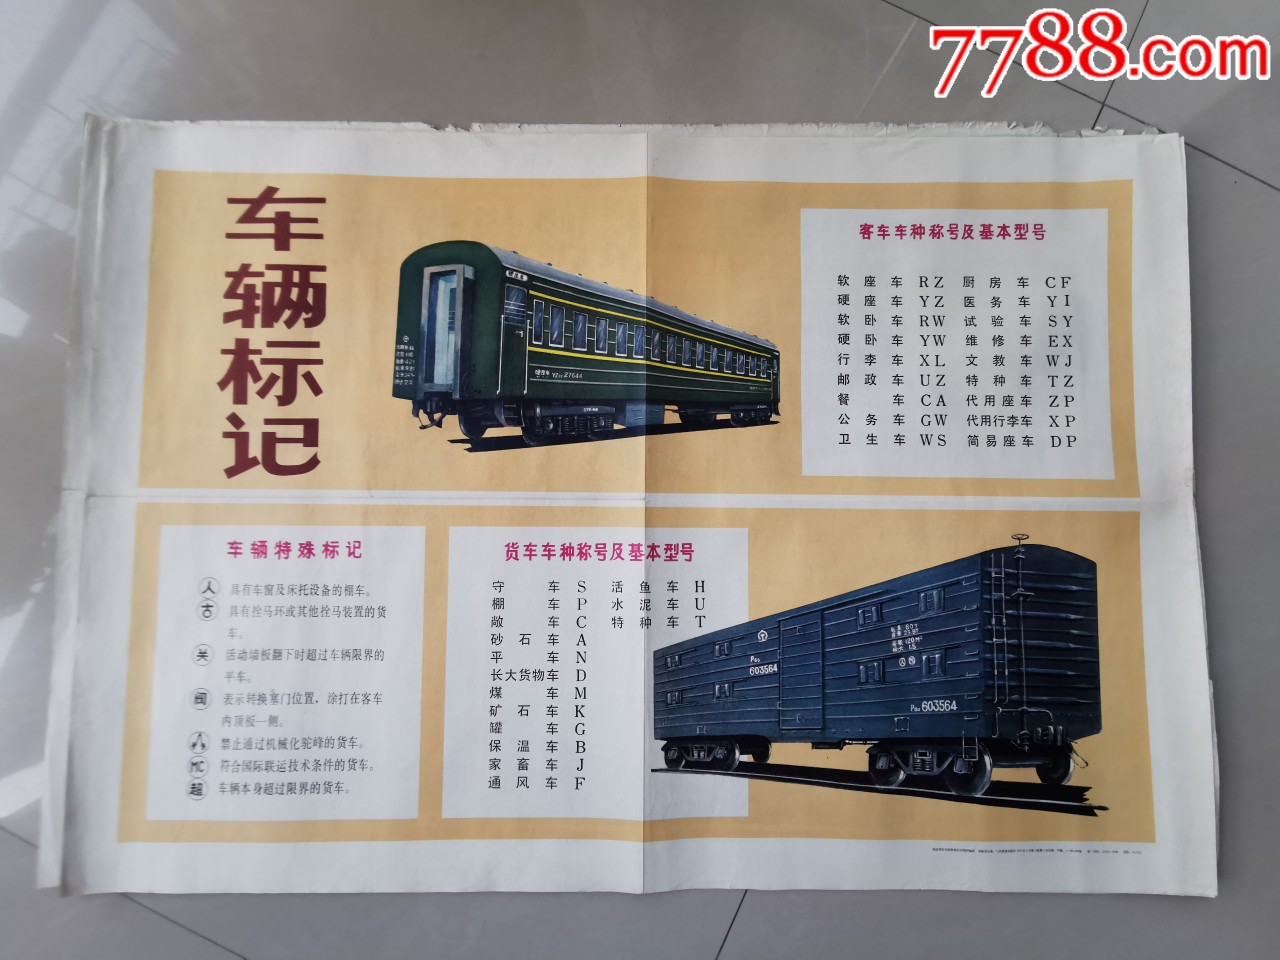 中国铁路宣传片_中国铁路95306网铁路物资采购与招商平台_春运铁路护路宣传